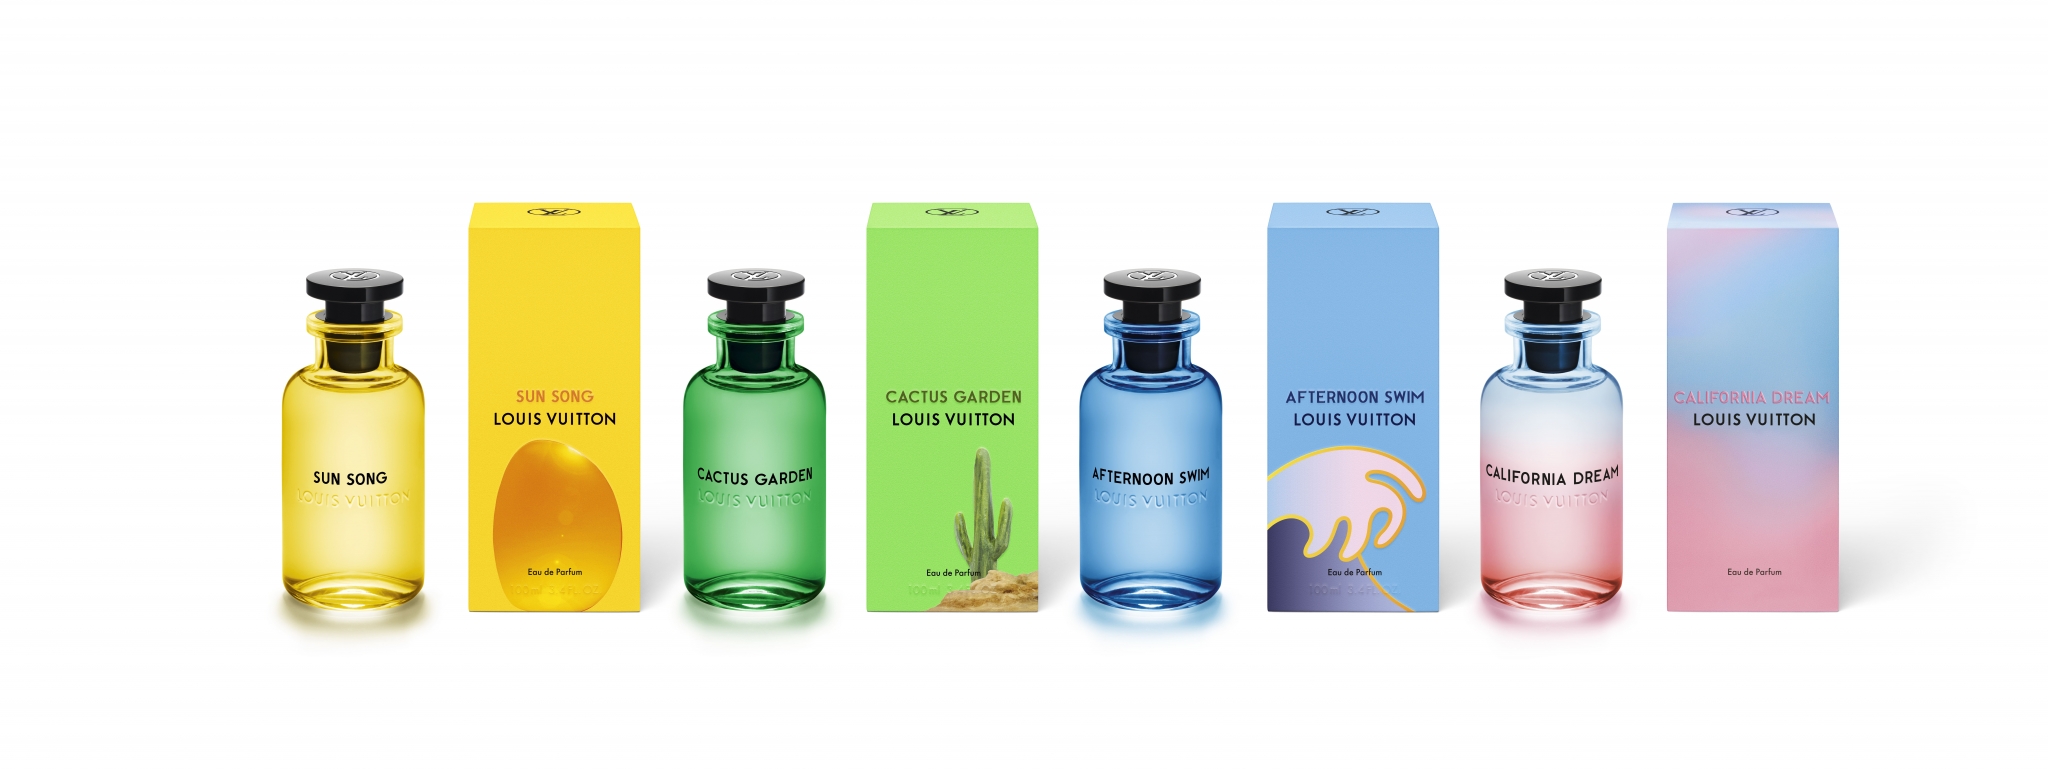 California Dream Louis Vuitton 香水 - 一款 2020年 新的 中性 香水